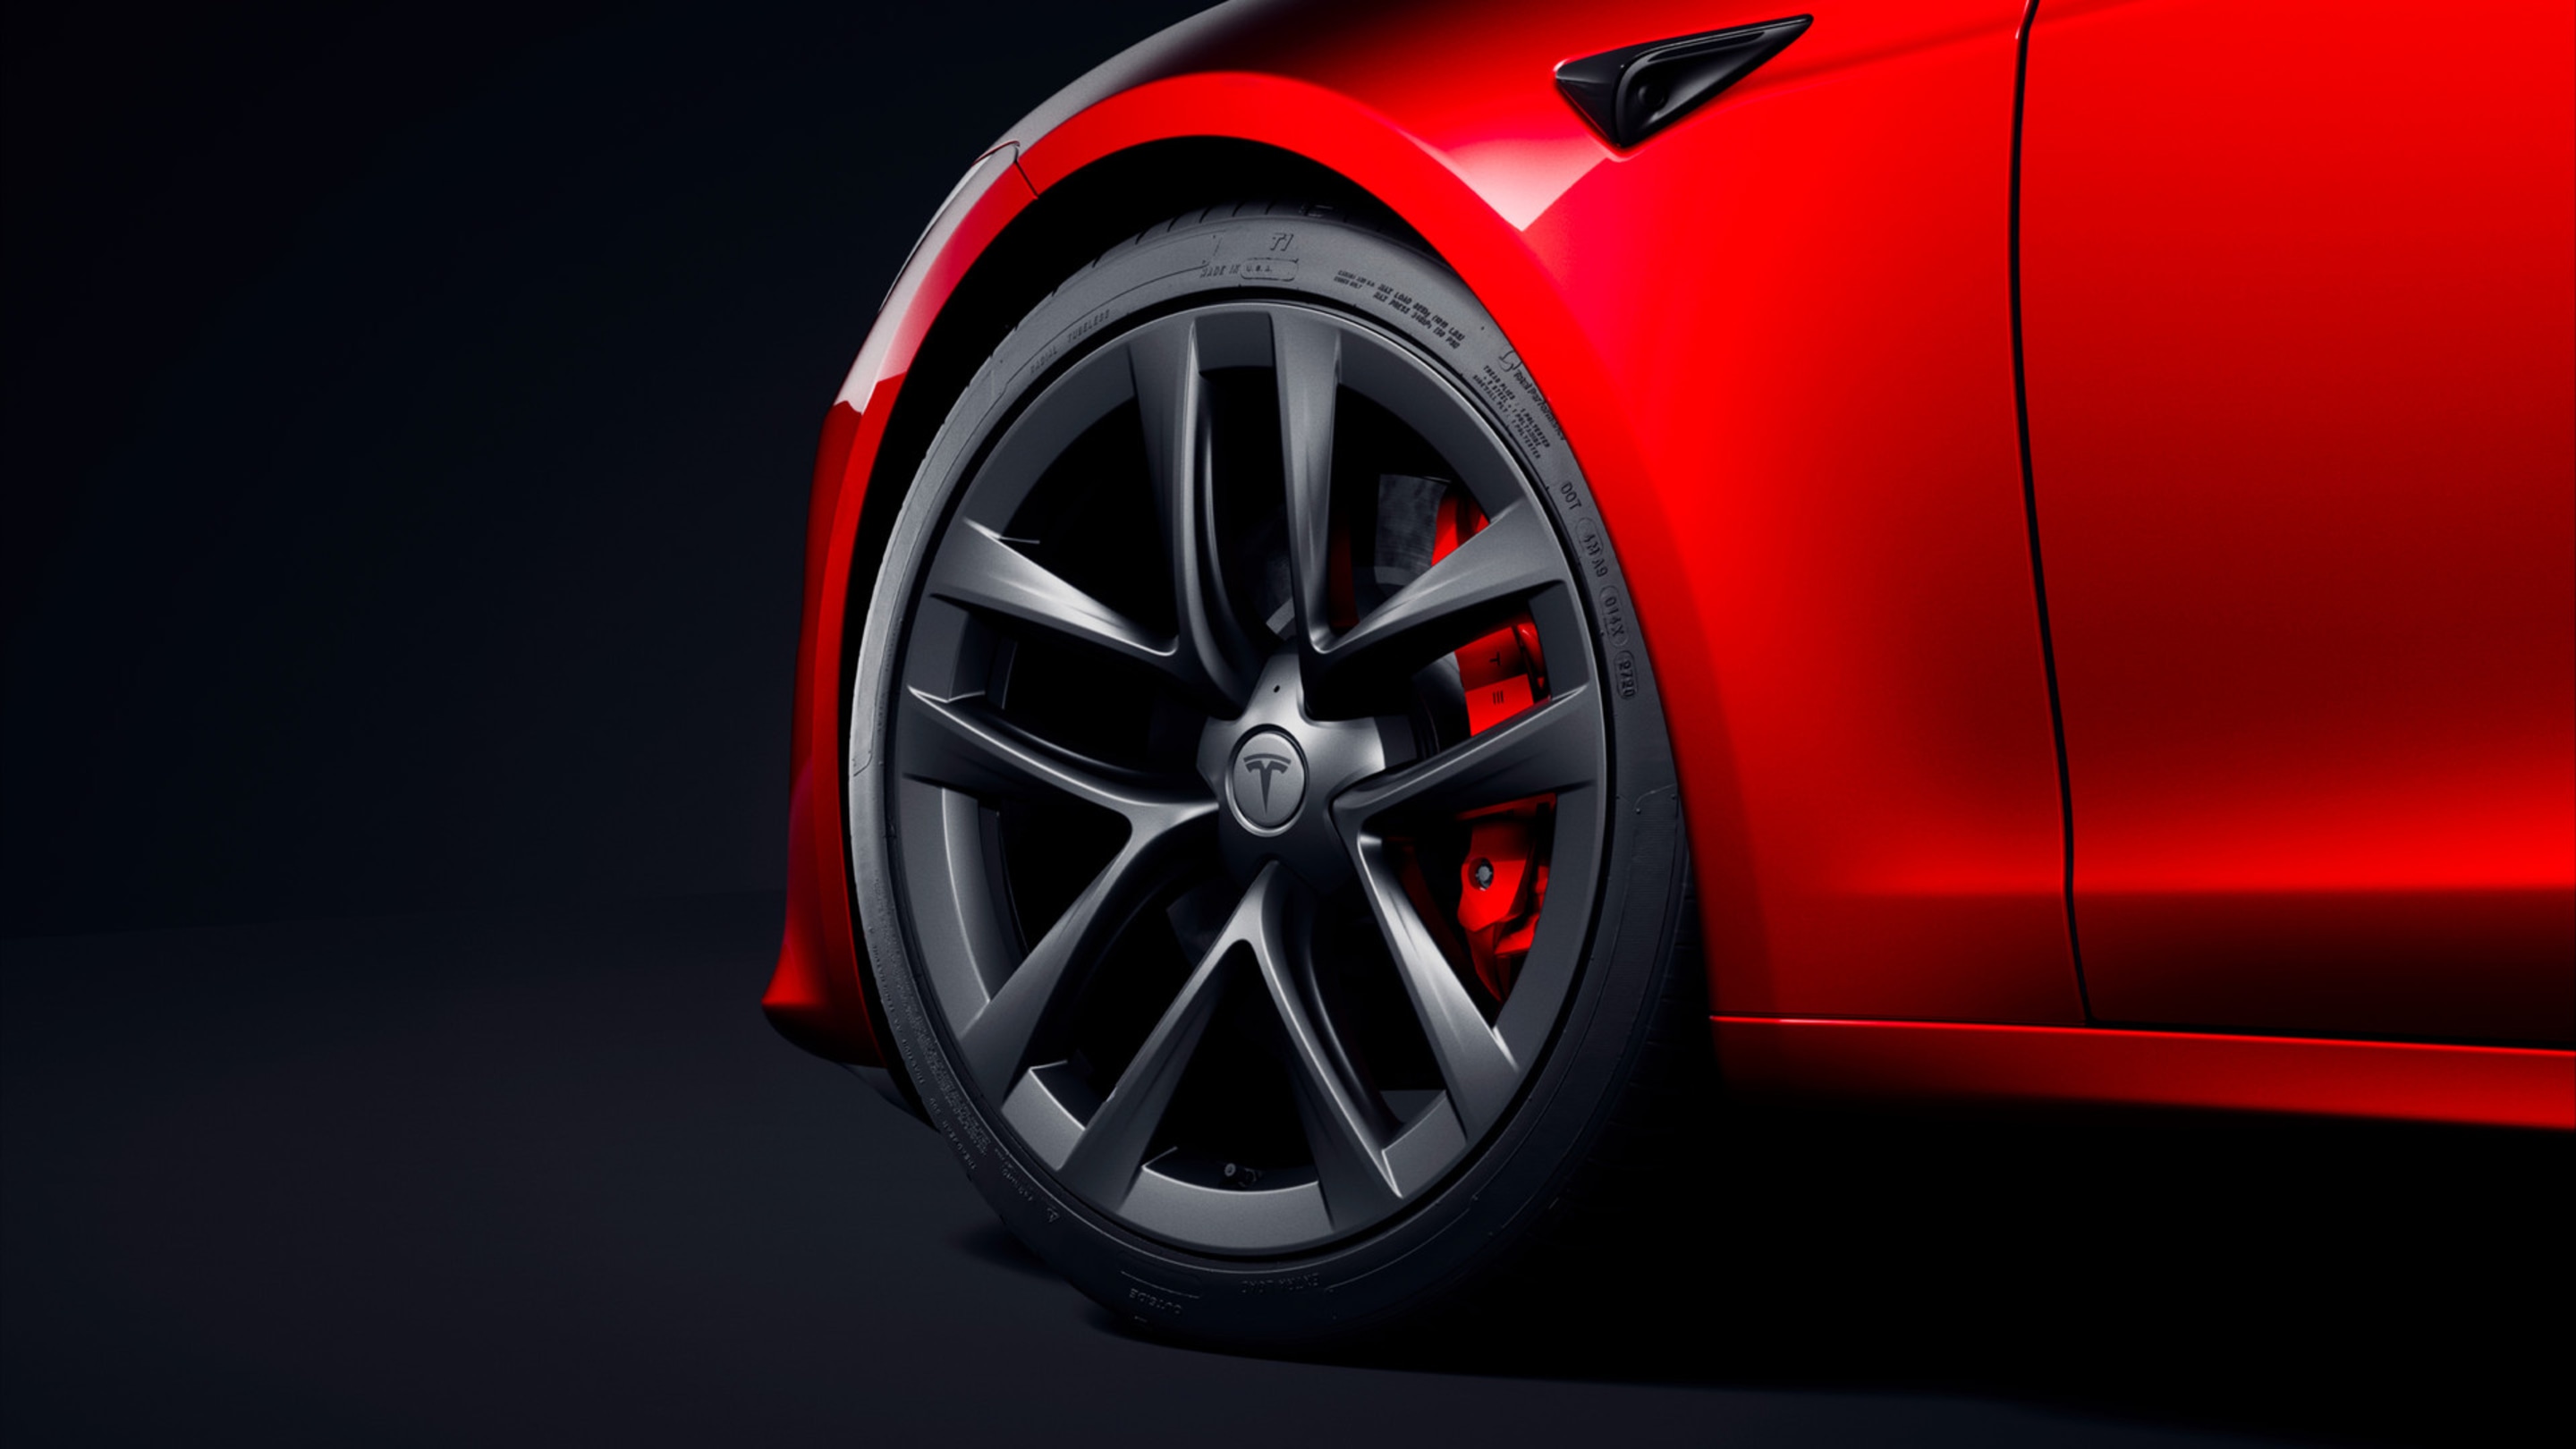 Rin delantero izquierdo de un Model S rojo